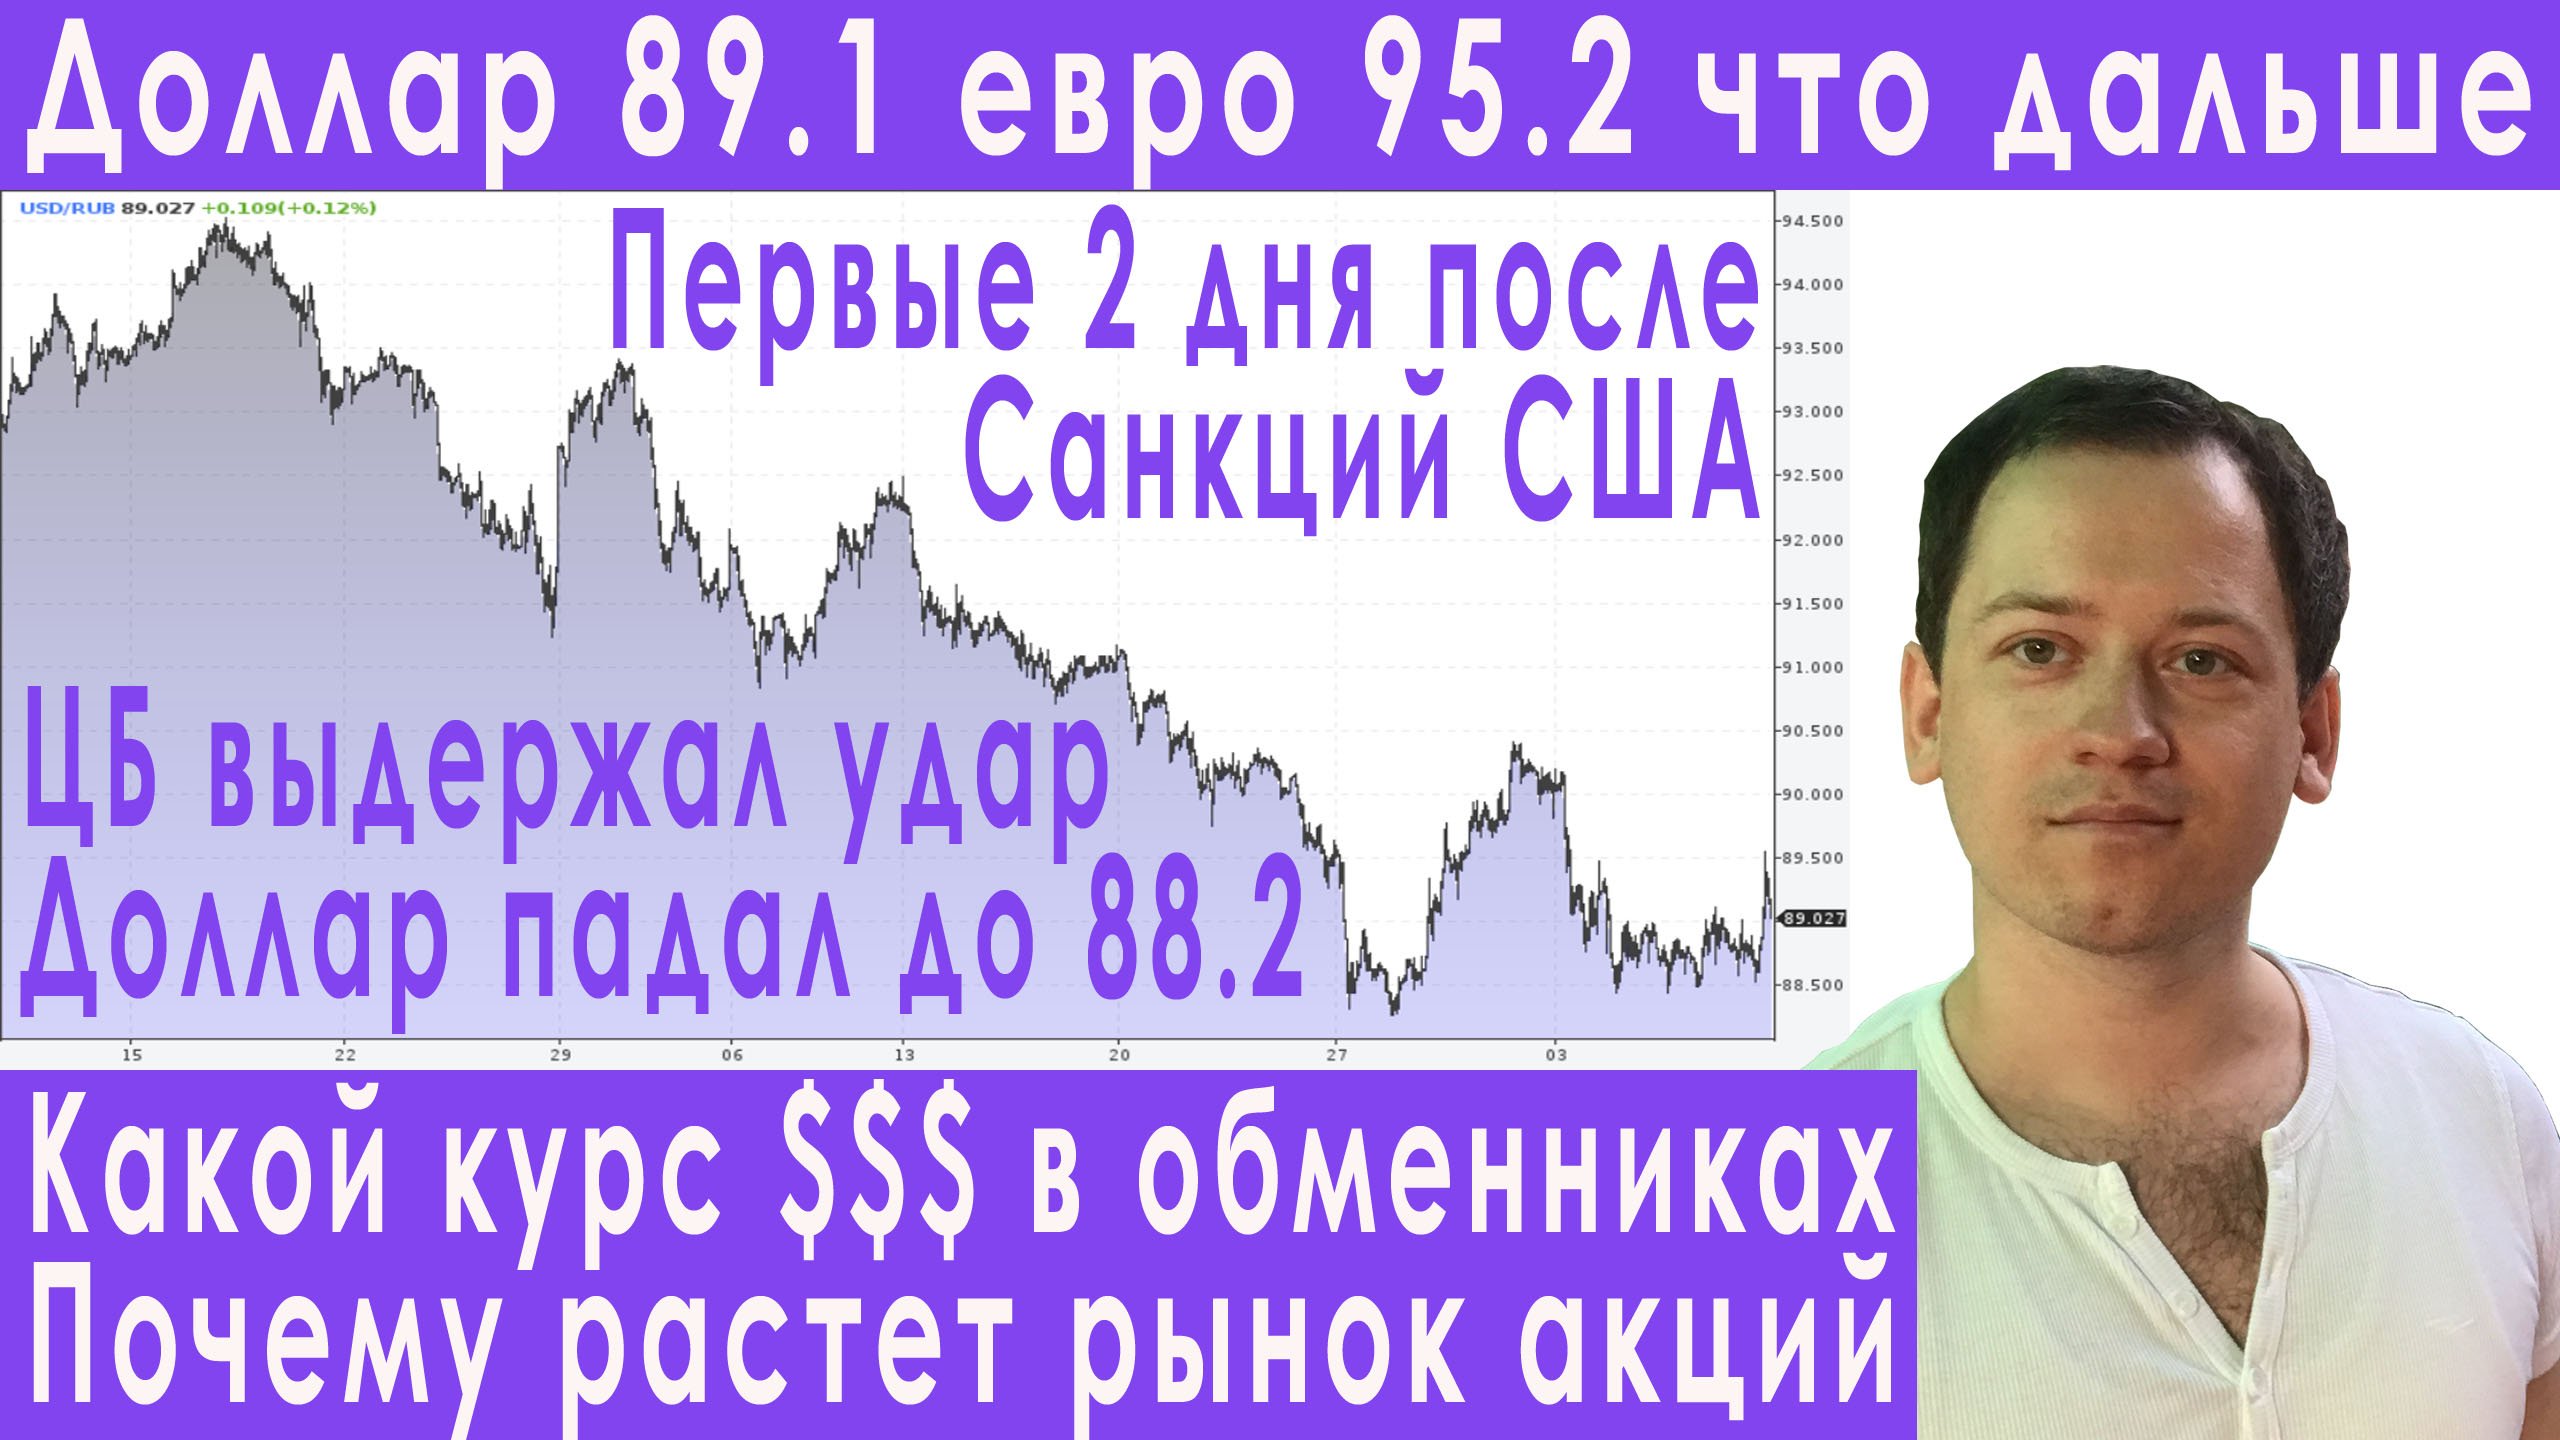 Срочно! Что будет дальше после остановки торгов долларом! Прогноз курса доллара евро рубля валюты